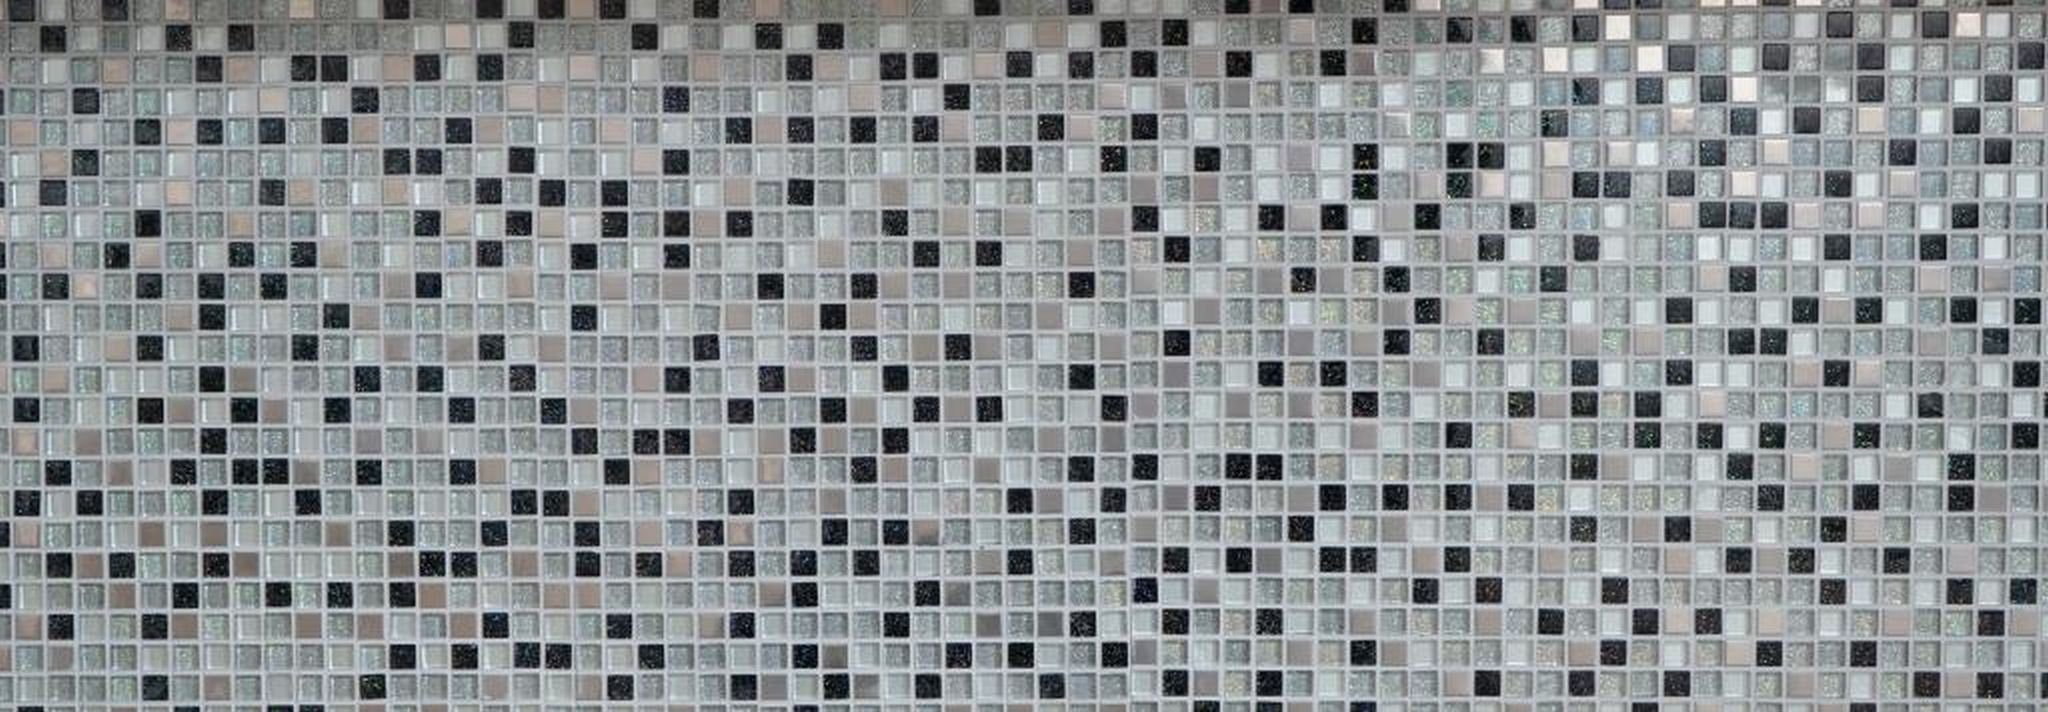 Mosani Mosaikfliesen silber grau schwarz Mosaikfliese Edelstahl Glasmosaik